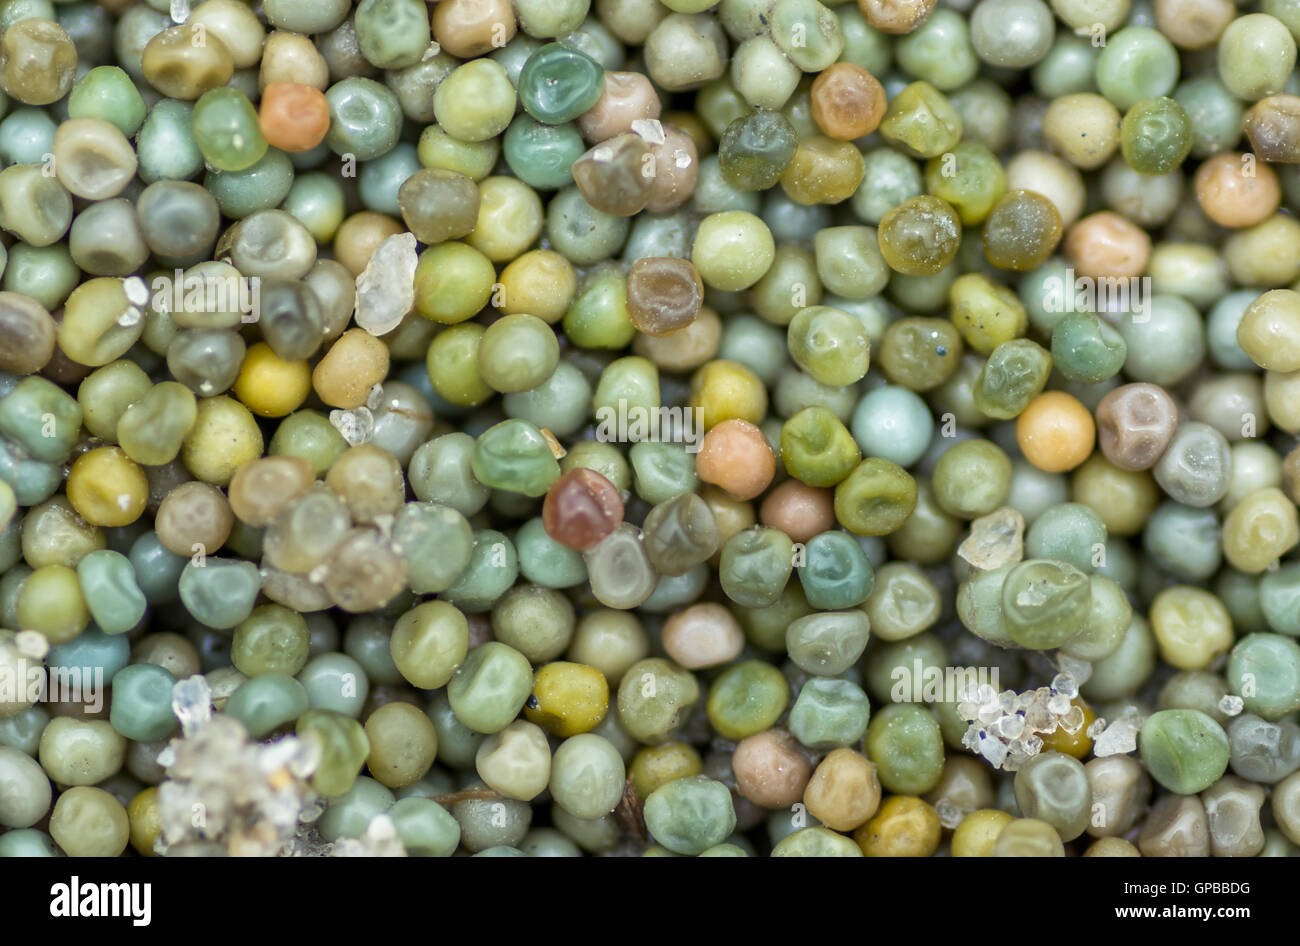 Fotografía macro de límulo huevos y granos de arena, la bahía de Delaware, Estados Unidos Foto de stock